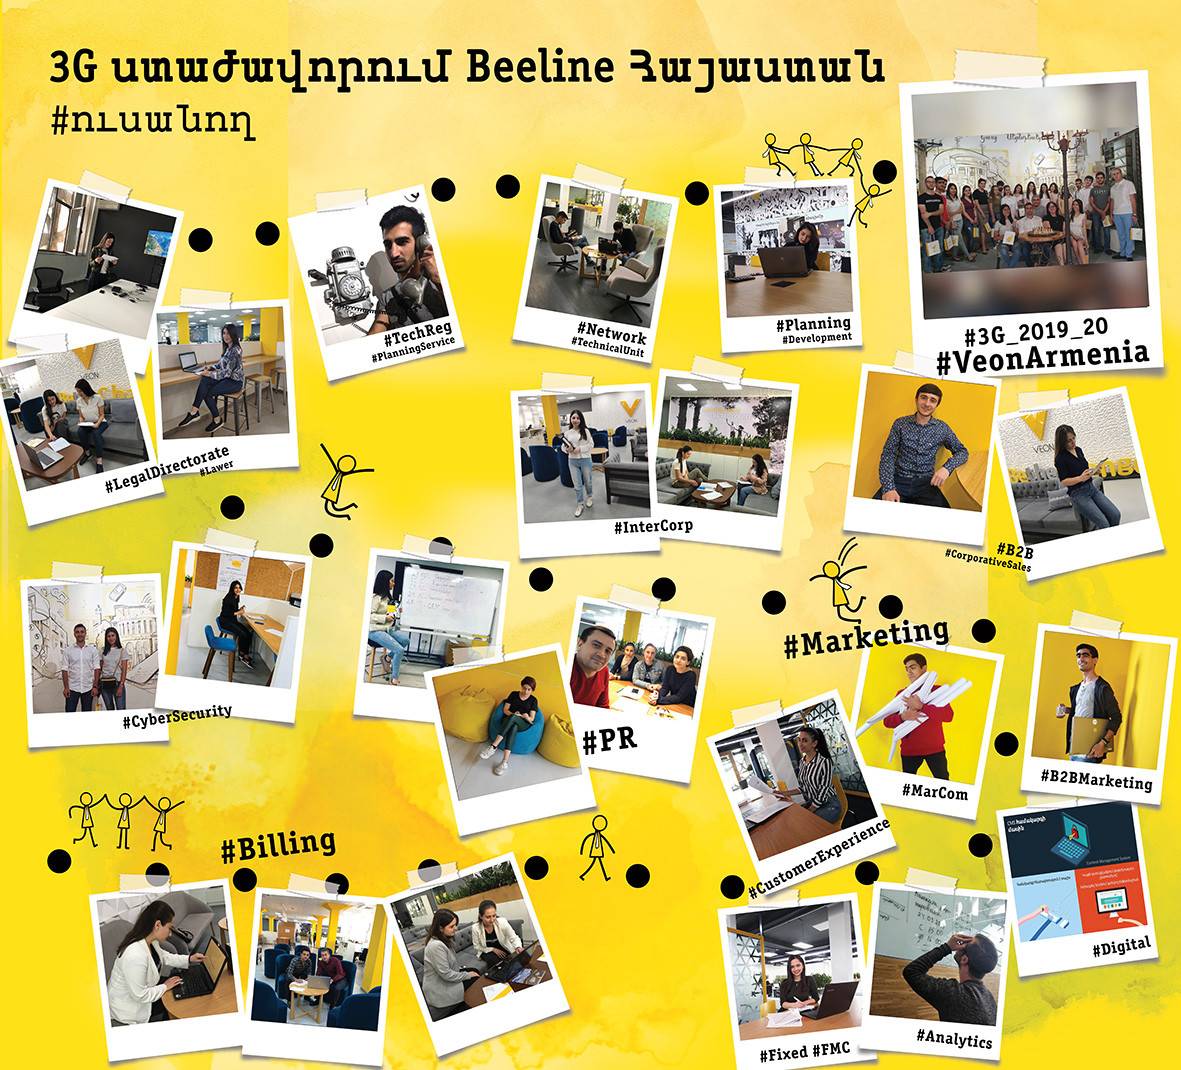 Հերթական 21 ուսանողները ներկայացրեցին իրենց առաջին աշխատանքային փորձը Beeline-ում